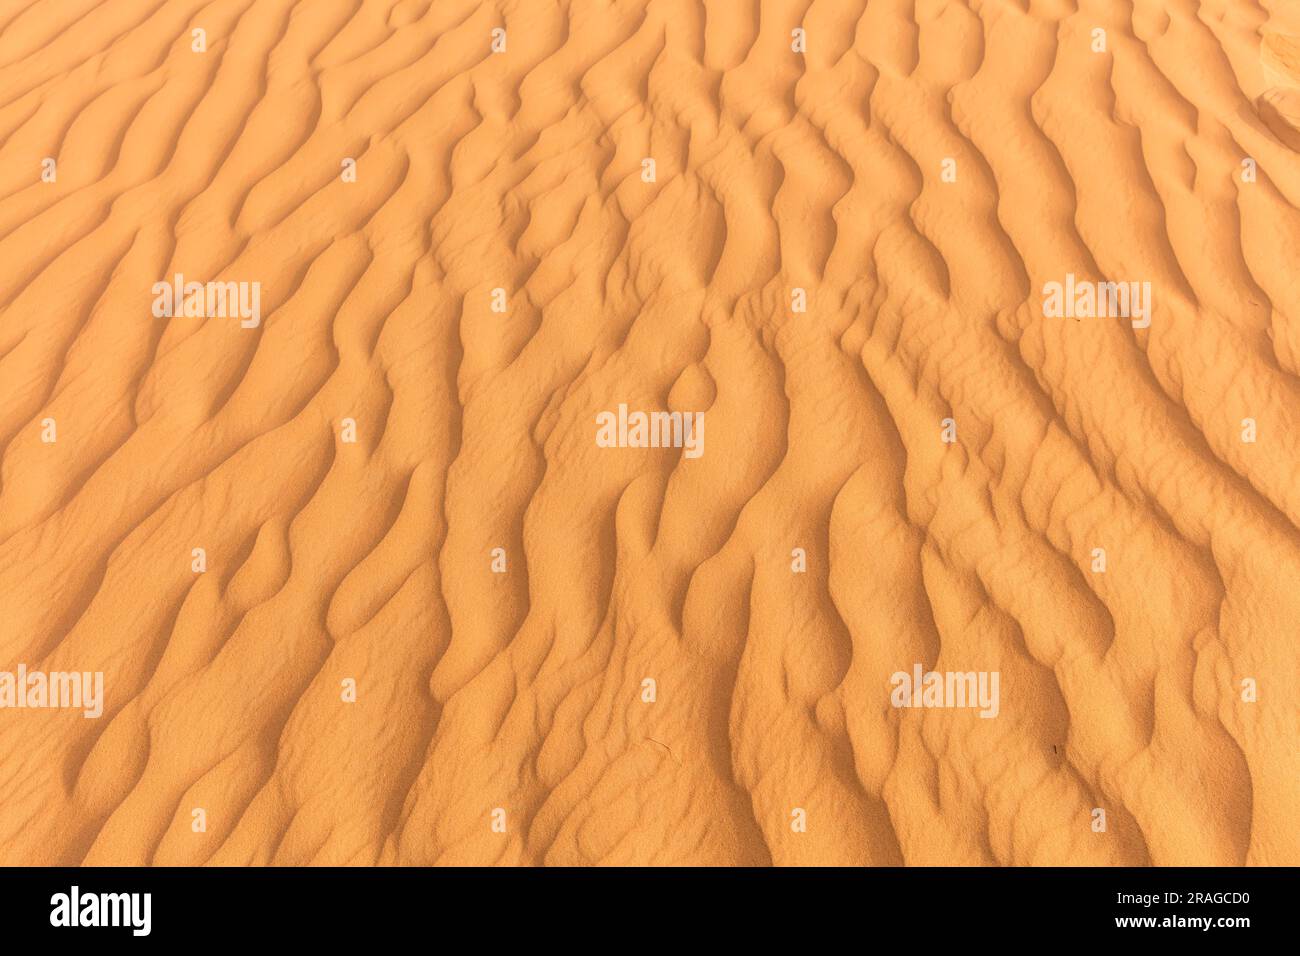 linee ondulate nella penisola araba del deserto di sabbia Foto Stock